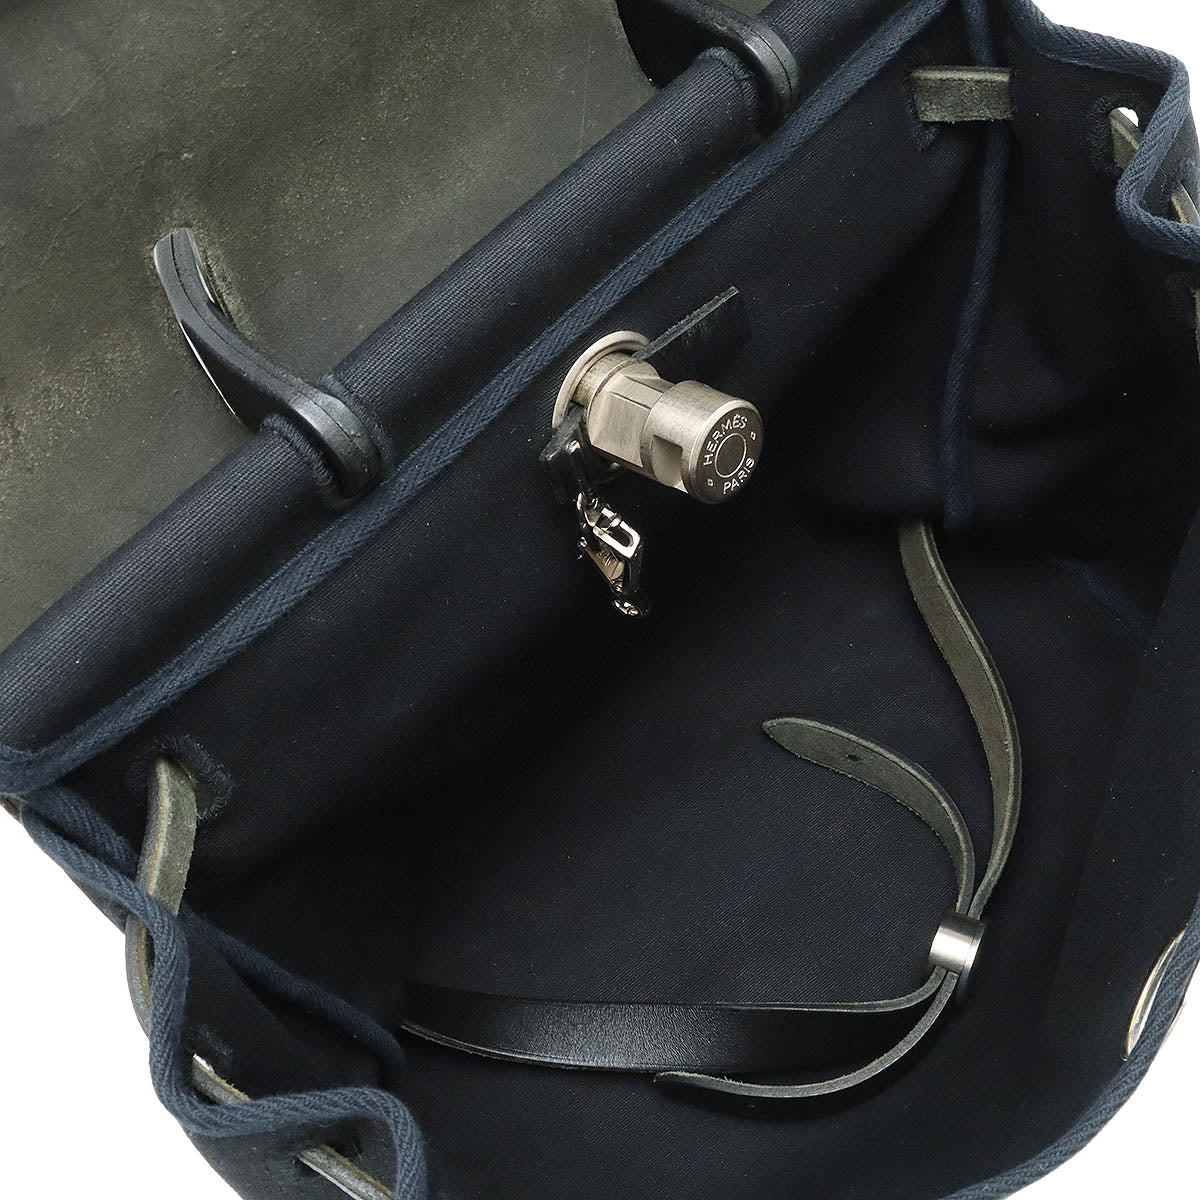 Hermes Elmes Air Bag AdPM Rucksack Backpack 2WAY Handbag Tower Office Leather Black □ O Signage □ Black □ Black □ Black □ Black □ Black □ Black